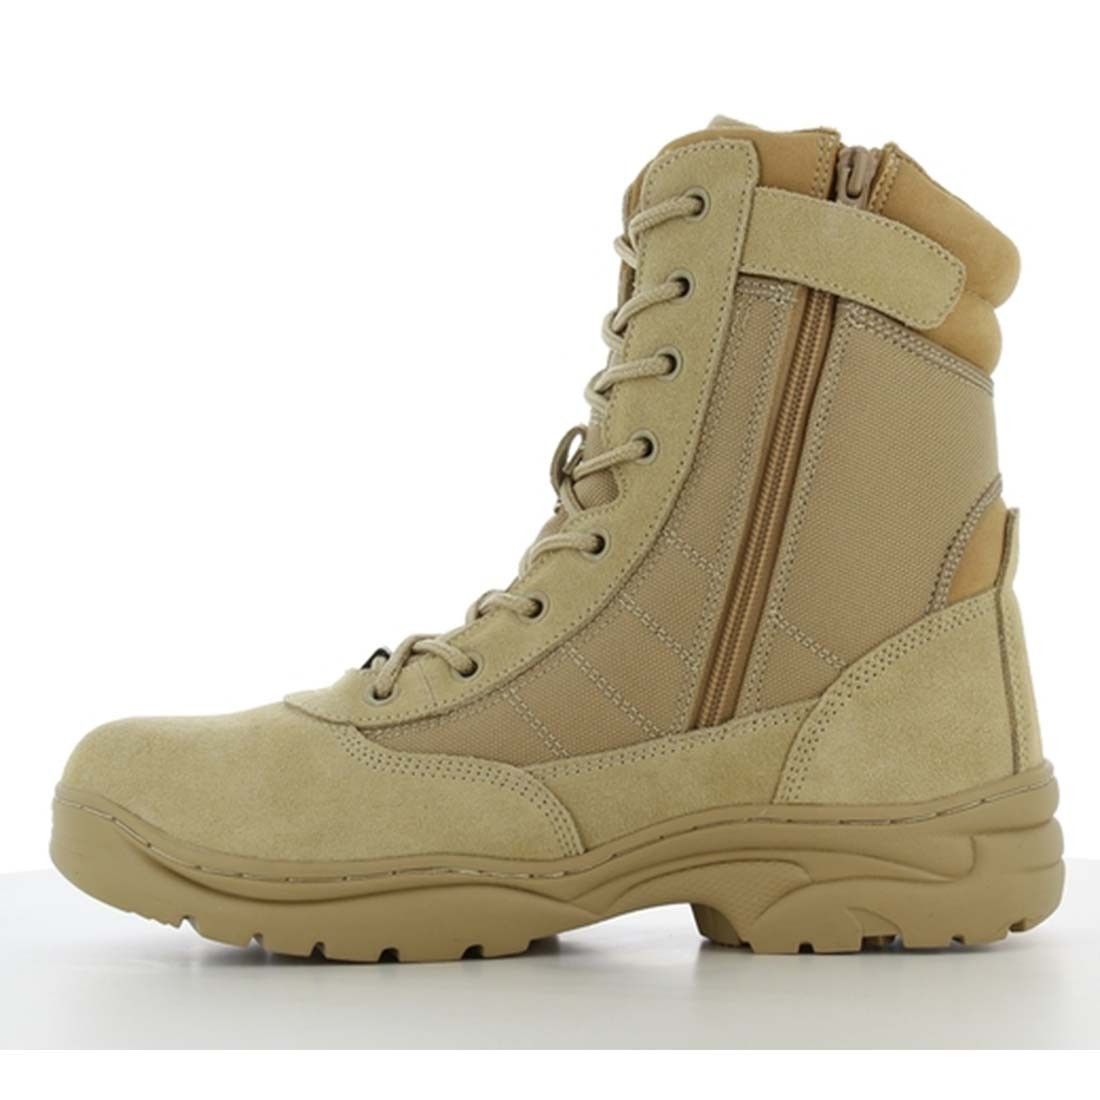 Bottes militaires hautes DUNE - Les chaussures de protection